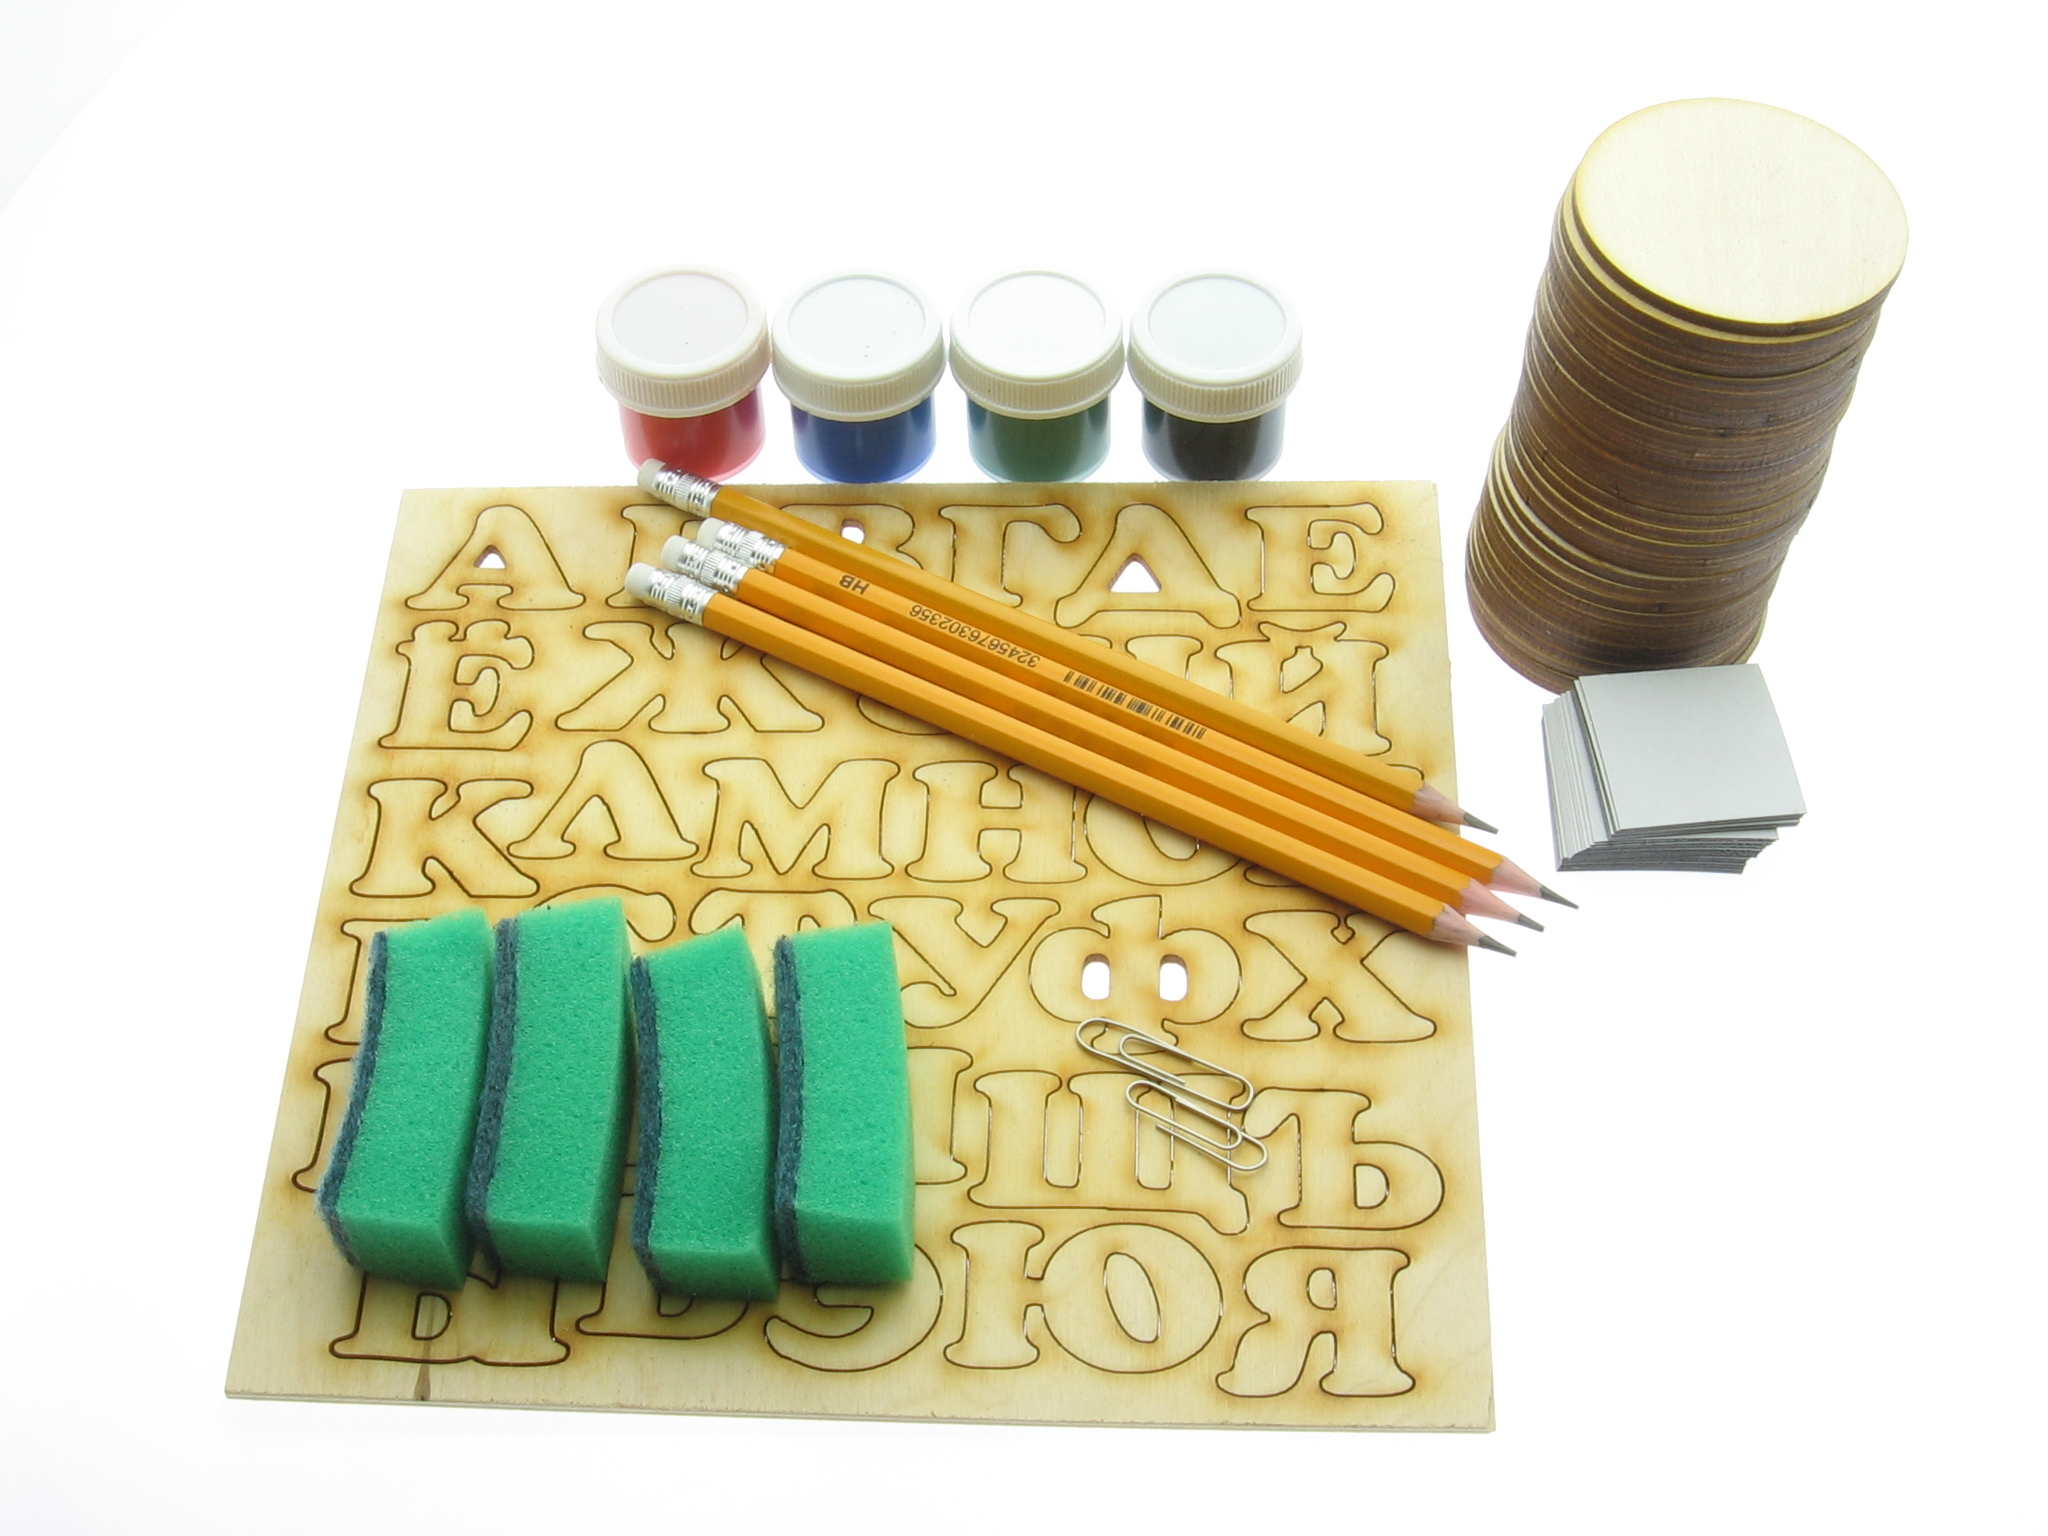 Фото-инструкция, изготовление деревянной магнитной азбуки своими руками от компании "Шоп Чилдрен Той" 